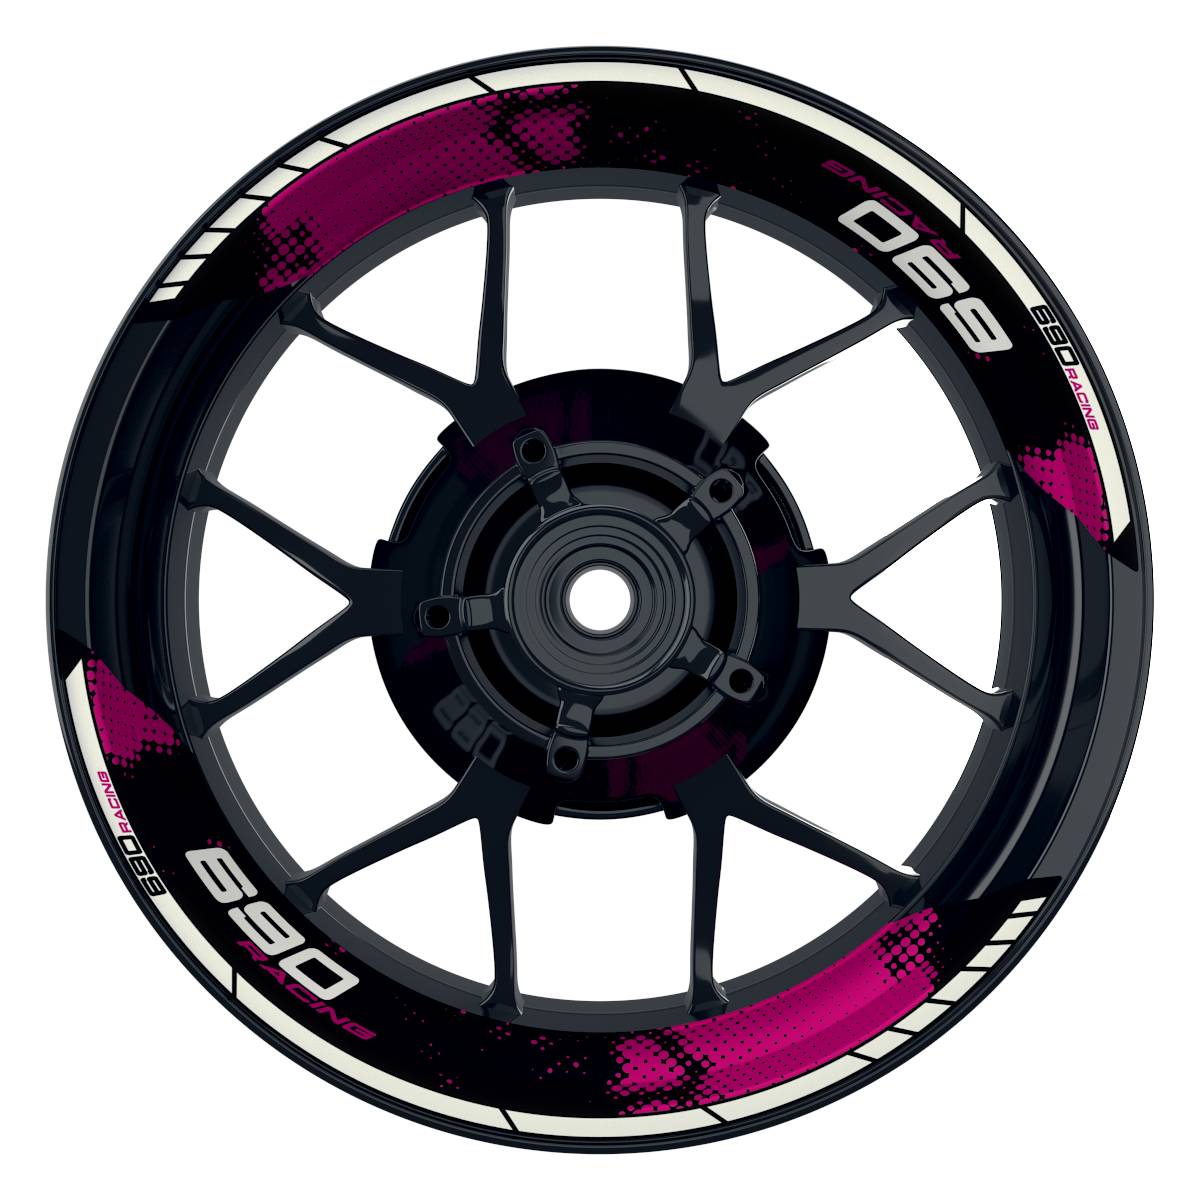 KTM Racing 690 Dots schwarz pink Frontansicht